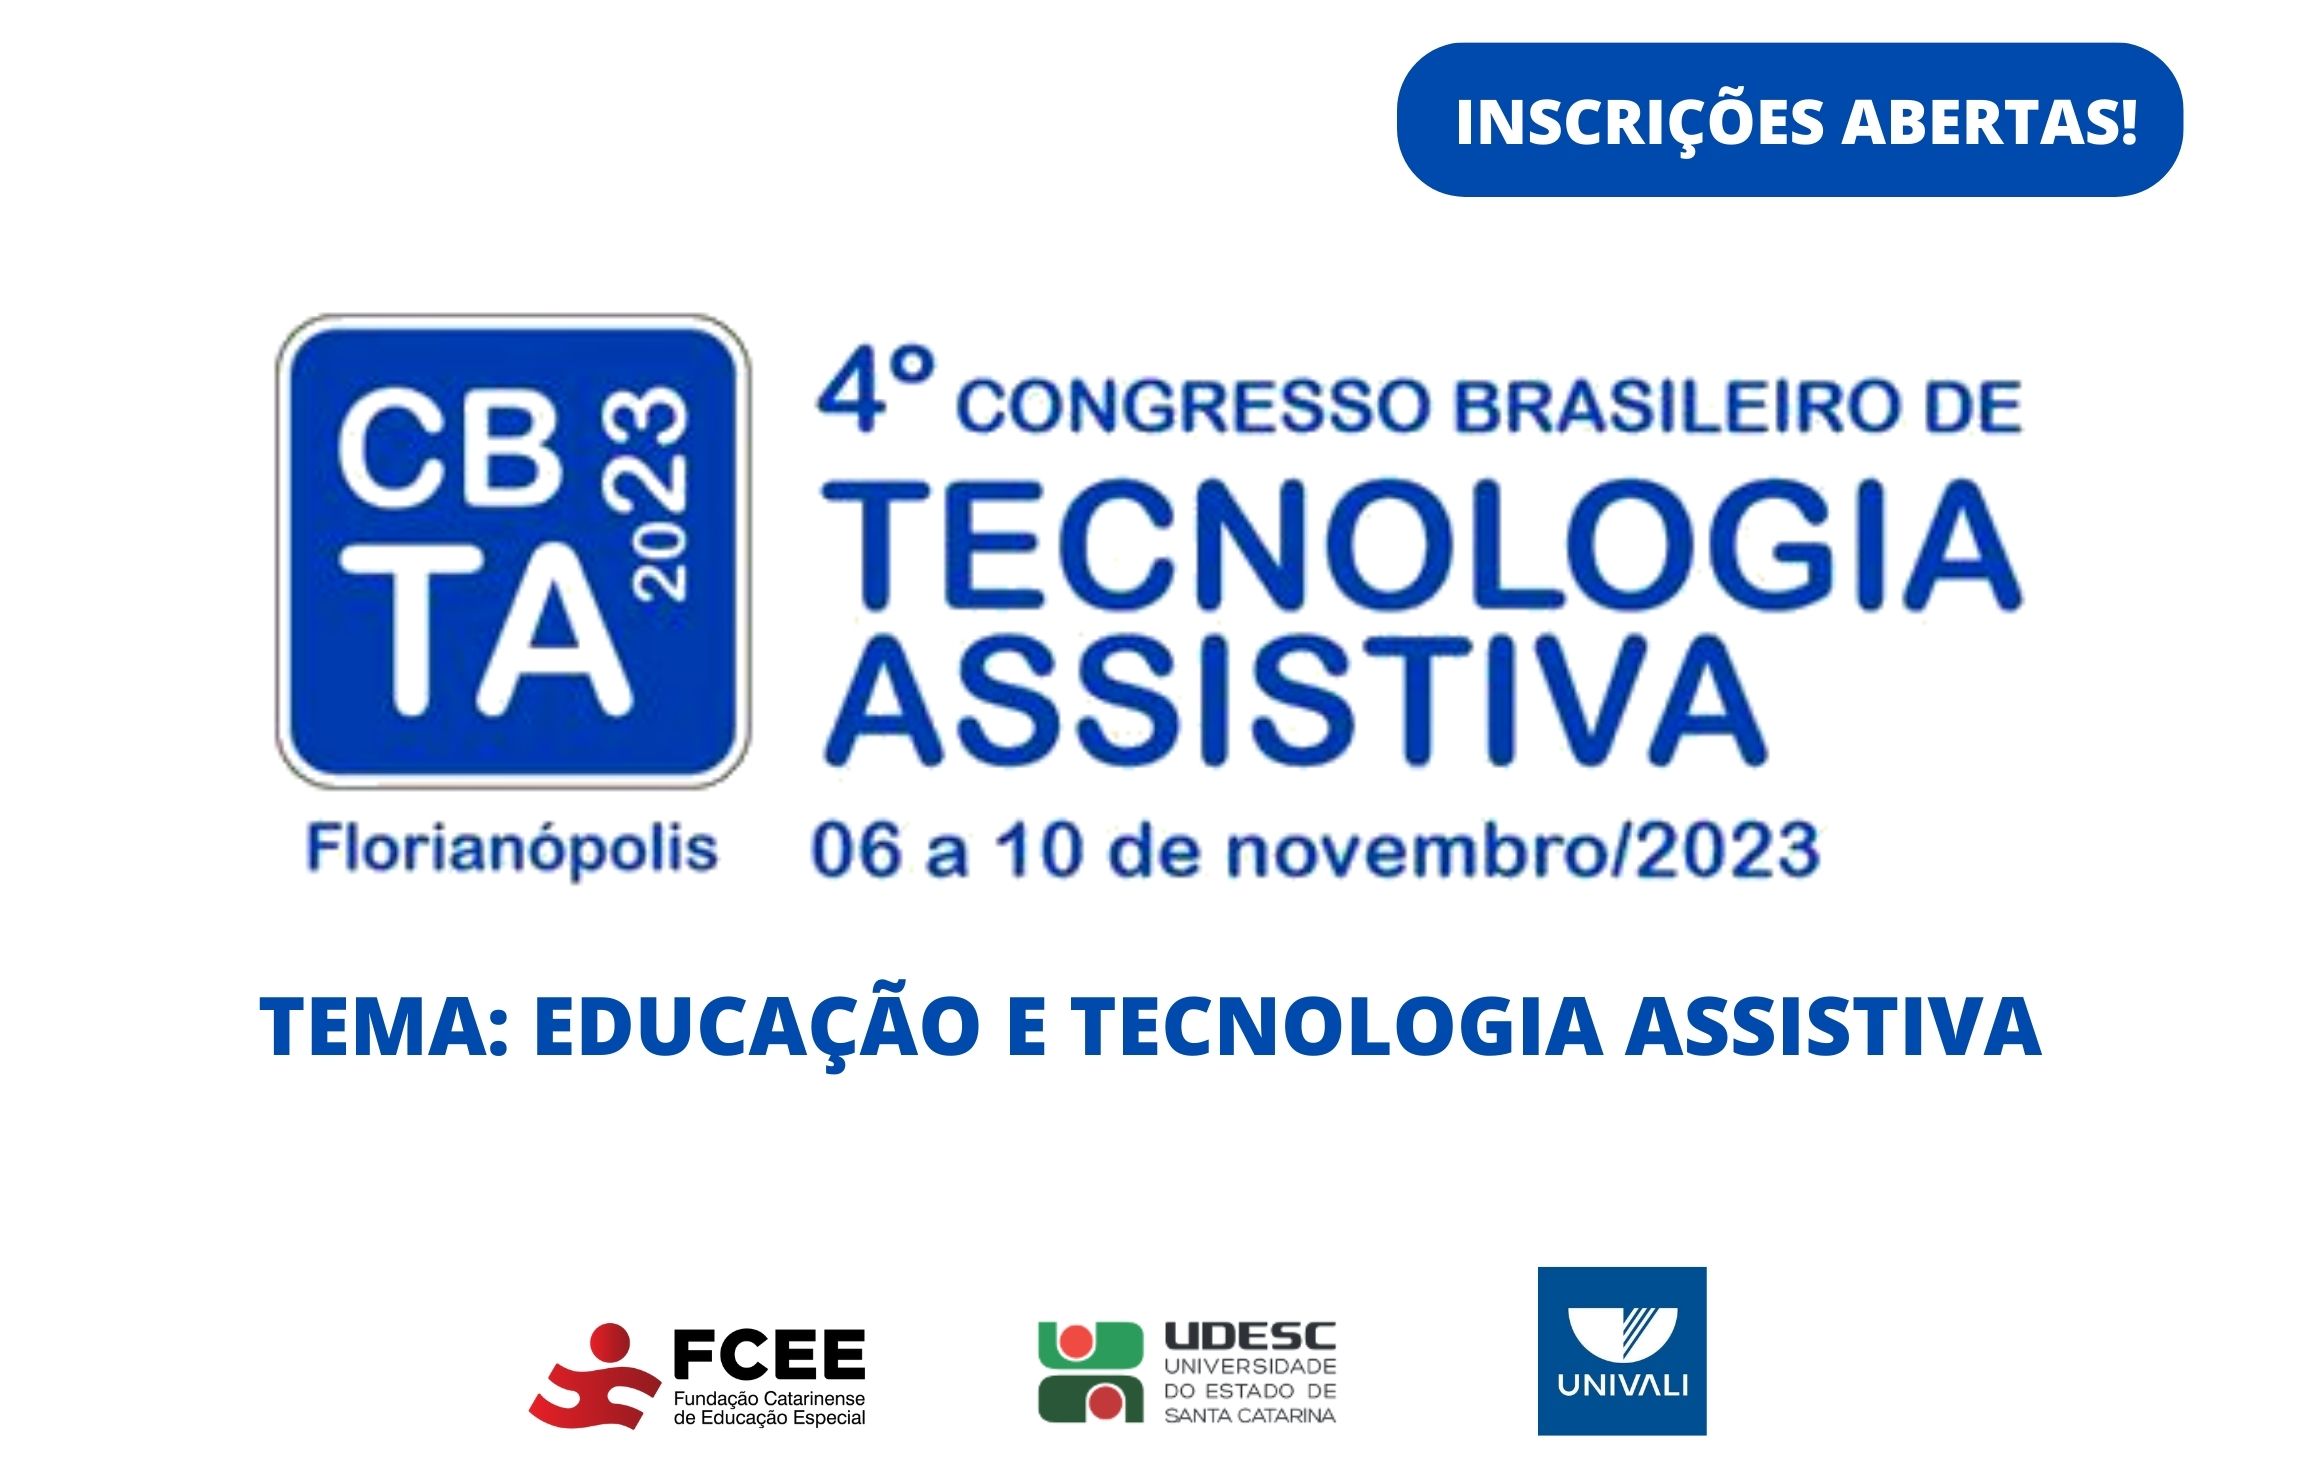 Imagem com texto: Inscrições abertas quarto congresso brasileiro de tecnologia assistiva 6 a 10 de novembro de 2023 tema educação e tecnologia assistiva